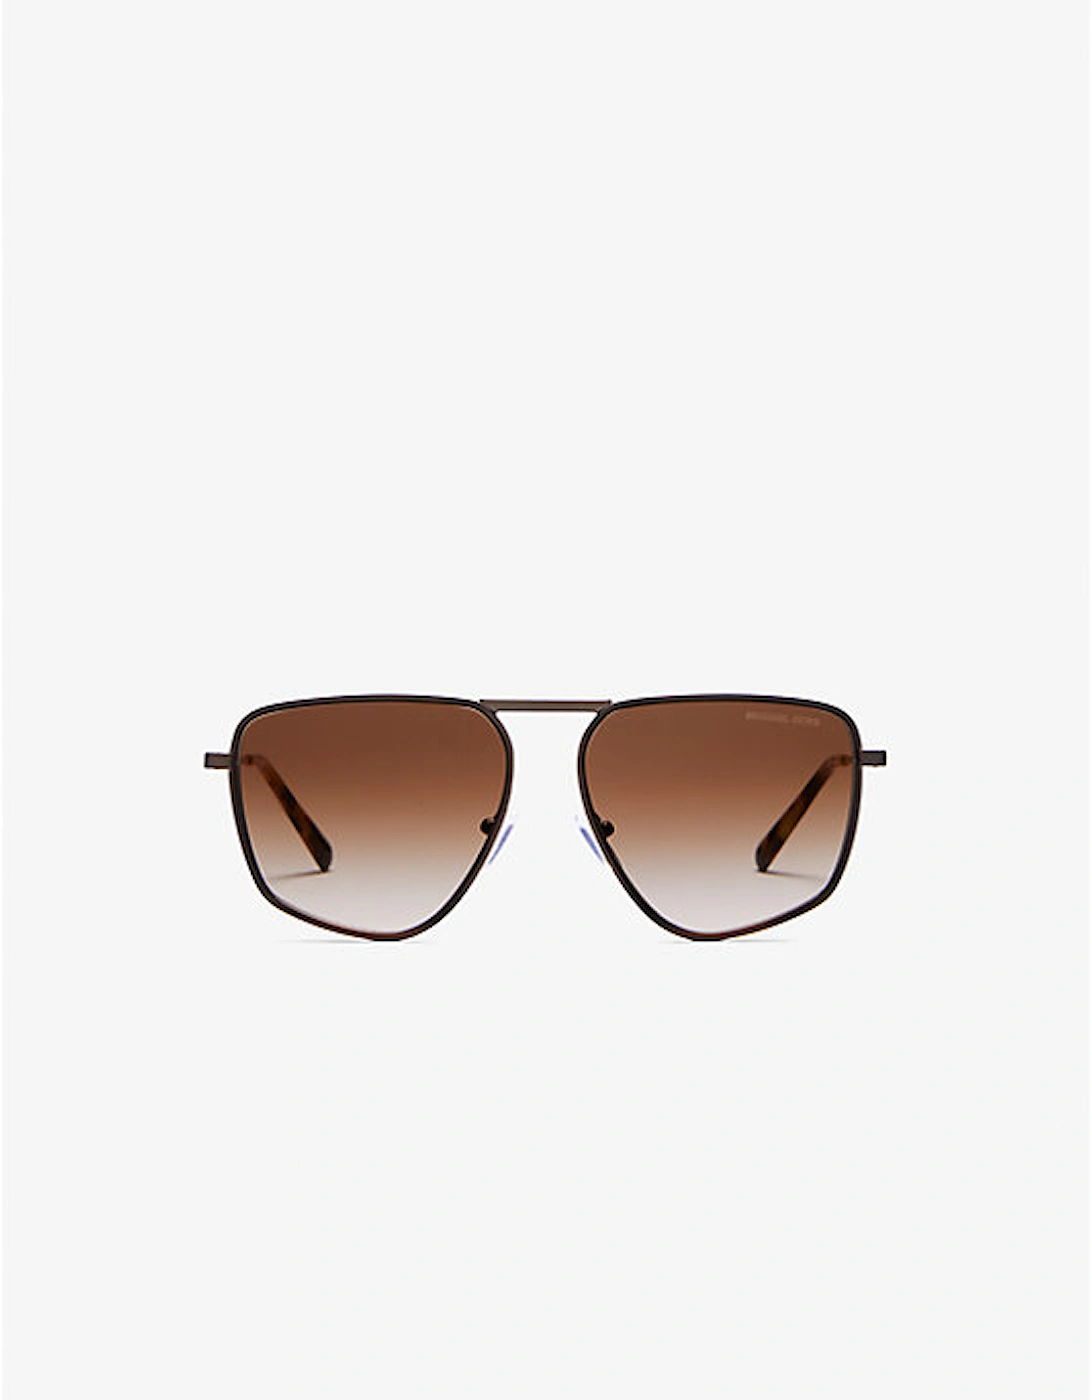 Silverton Sunglasses, 2 of 1